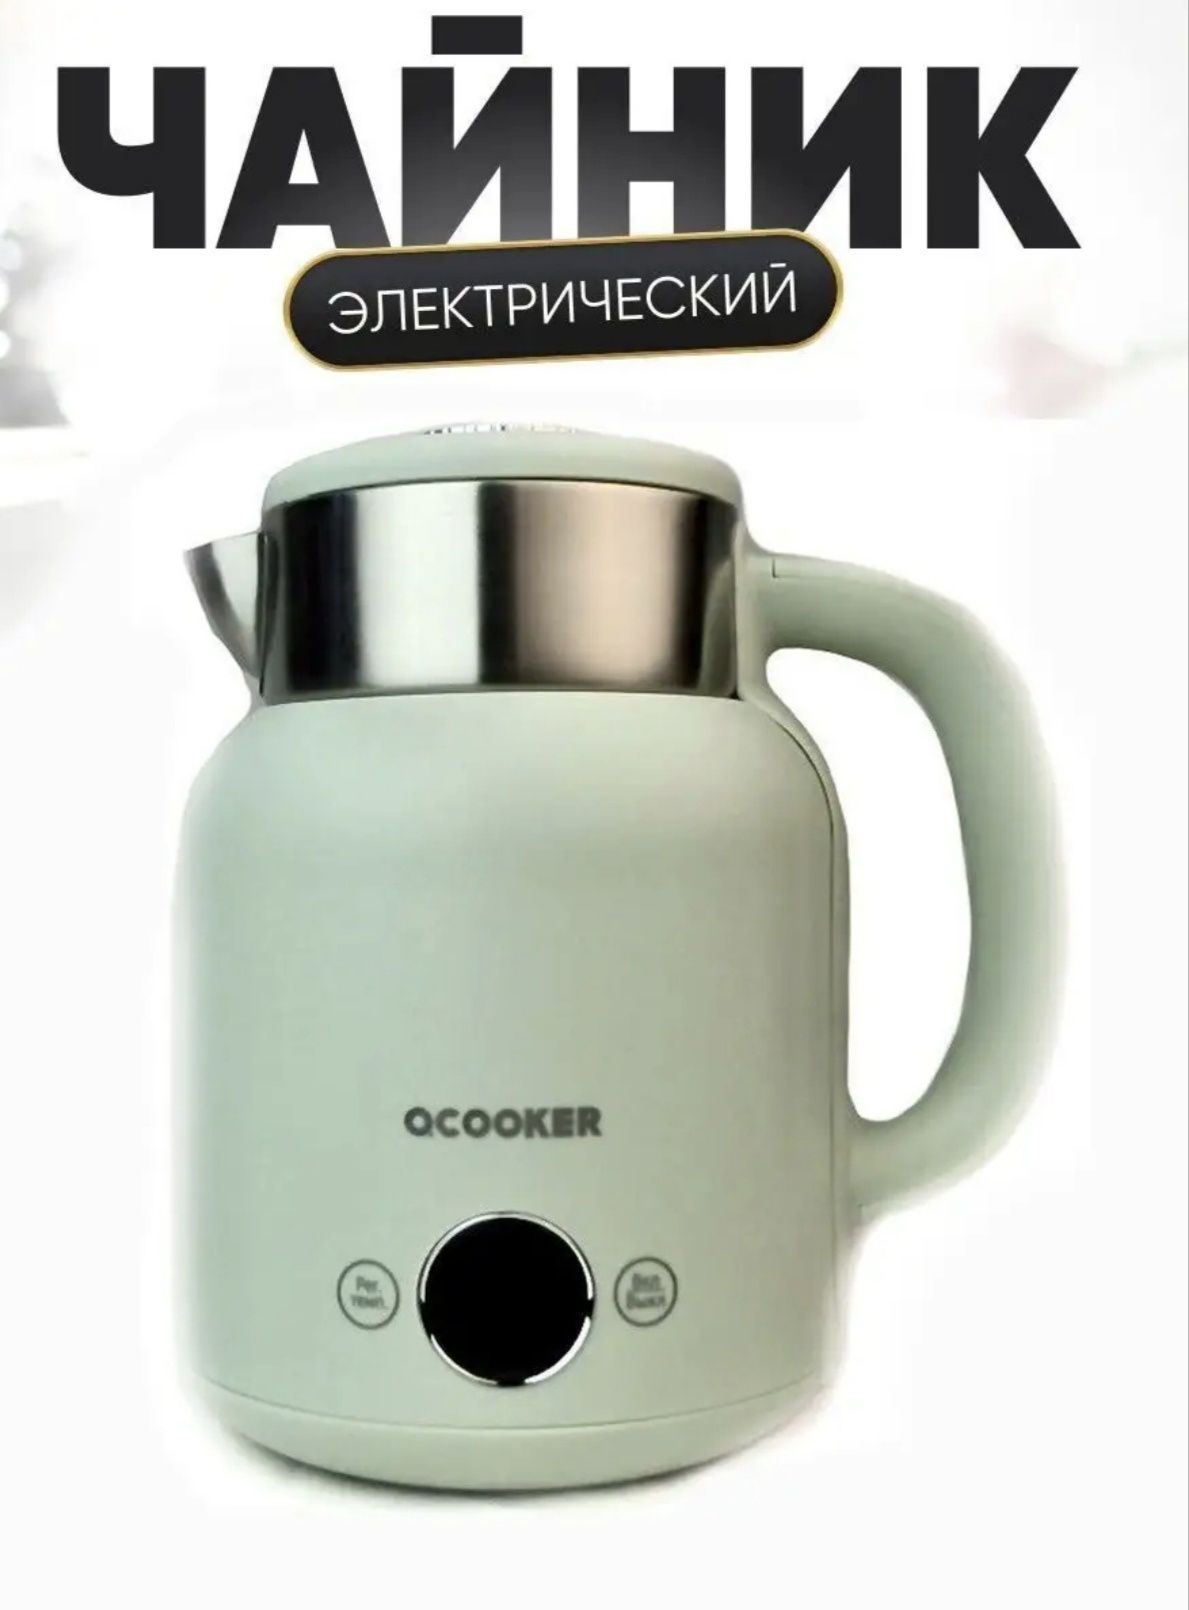 Чайник электрический Qcooker